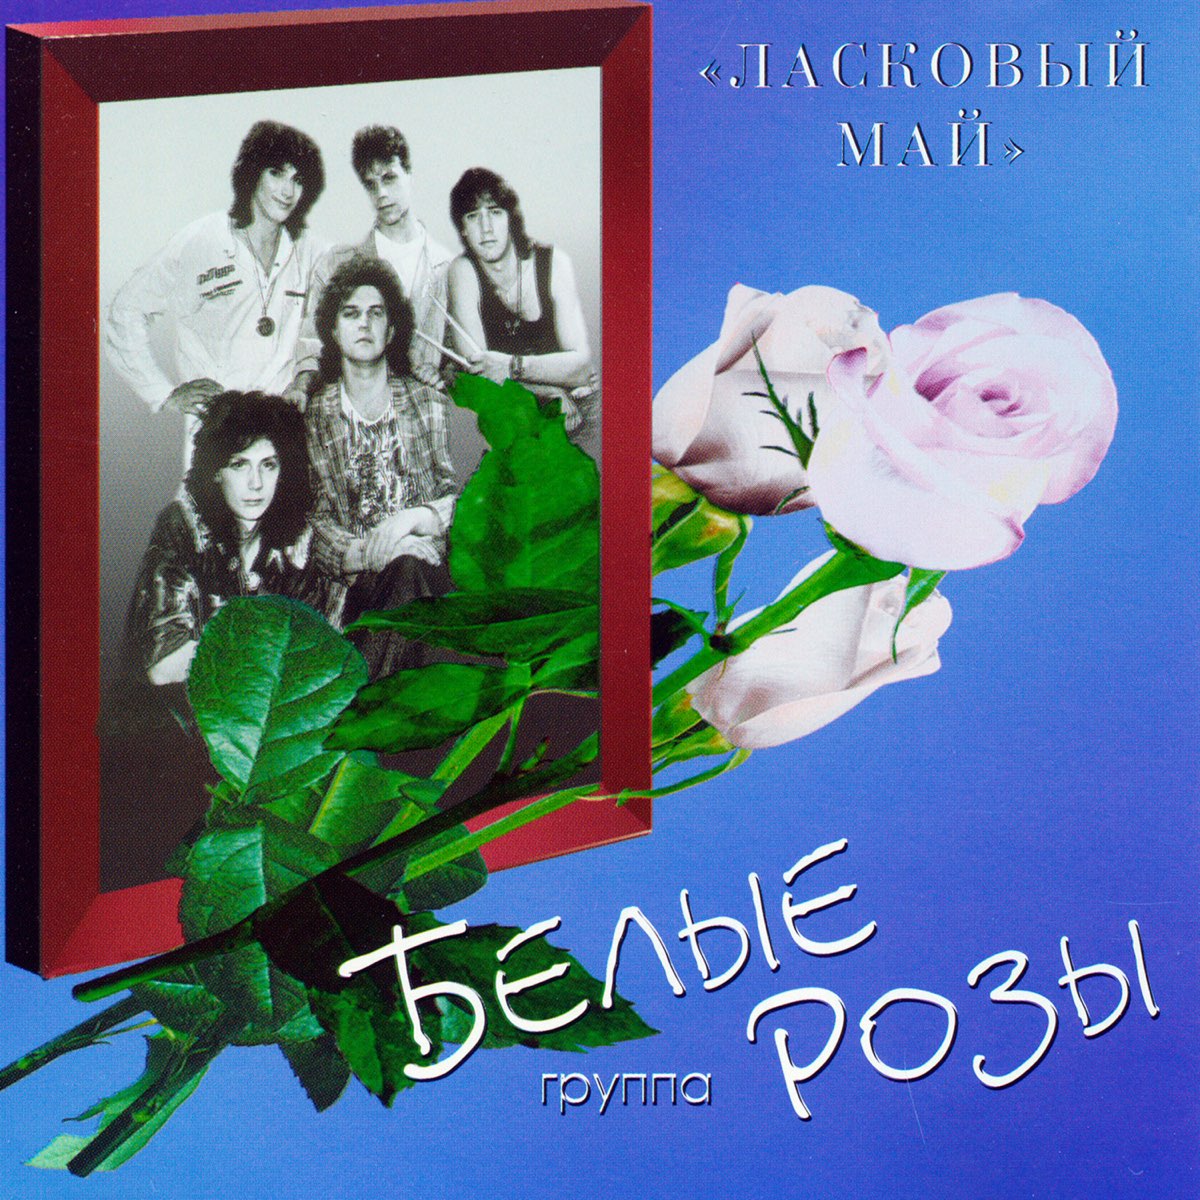 Ласковый май белые розы 1989. Группа белые розы - ласковый май 1989. Белые розы 1989 альбом.